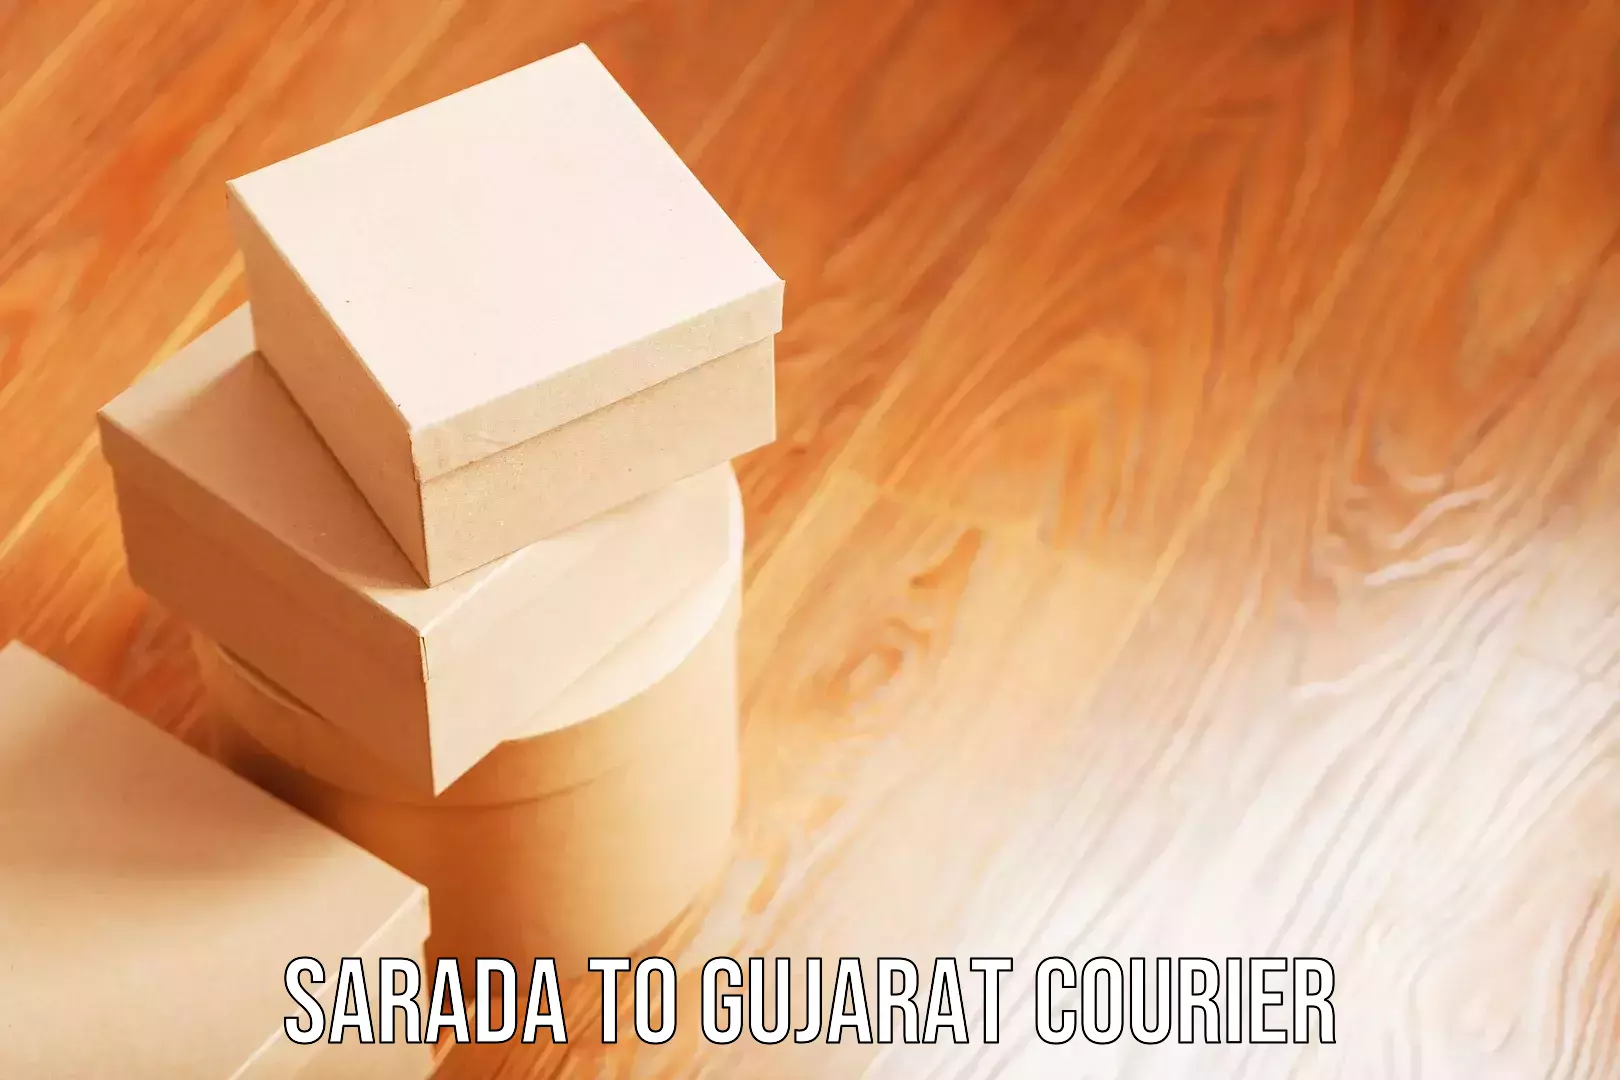 Baggage delivery estimate Sarada to Gujarat